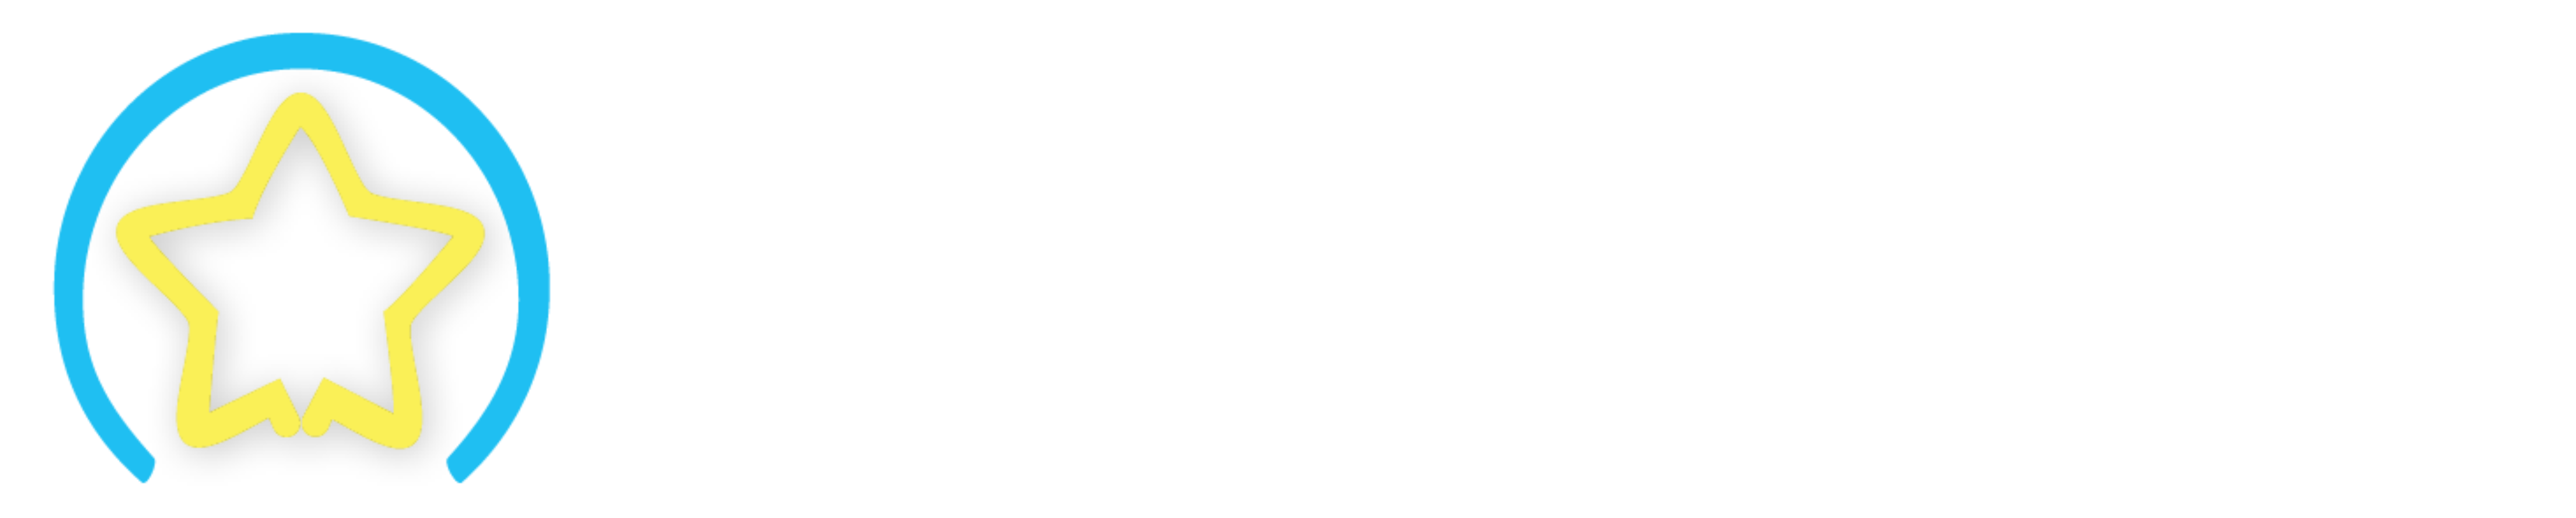 Who's Al Whittle? logo